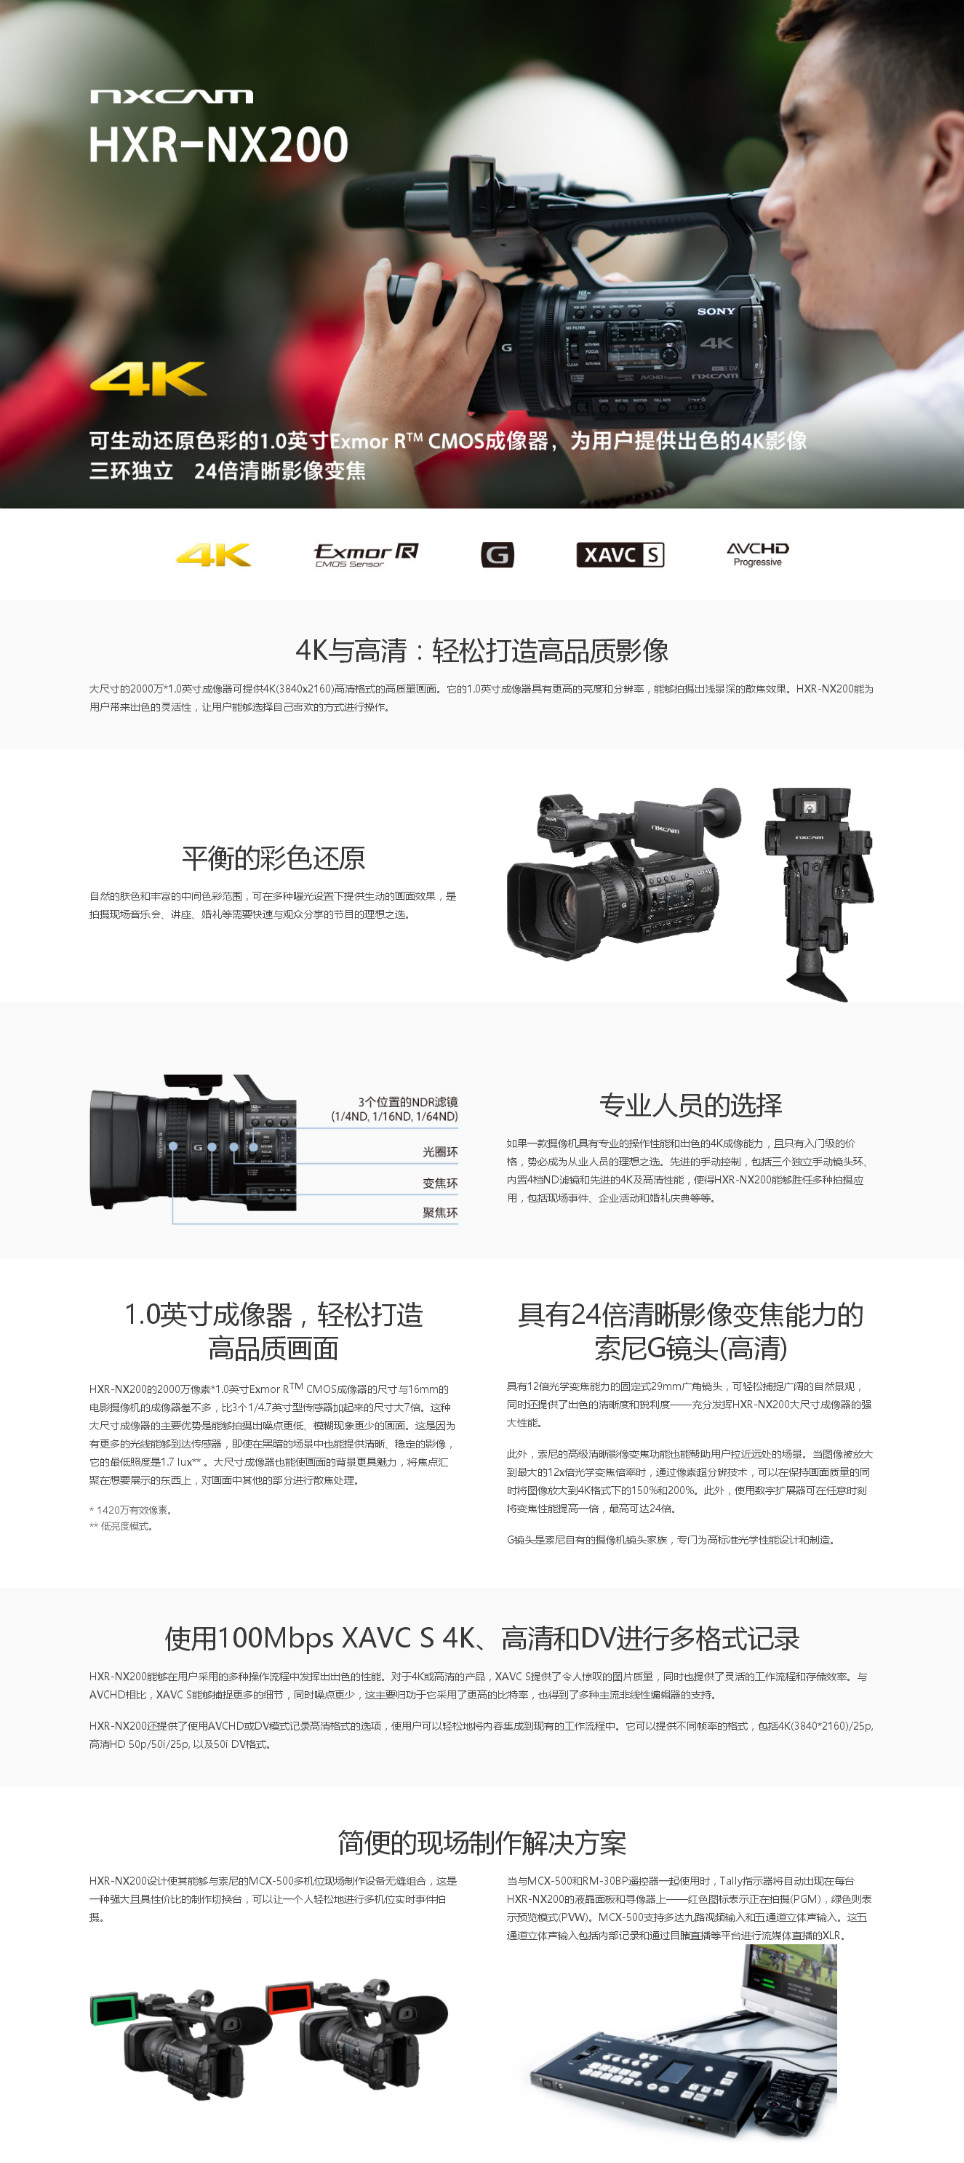 索尼HXR-NX200_Sony HXR-NX200_专业手持式摄录一体机_报价,价格,配置,详情-.png